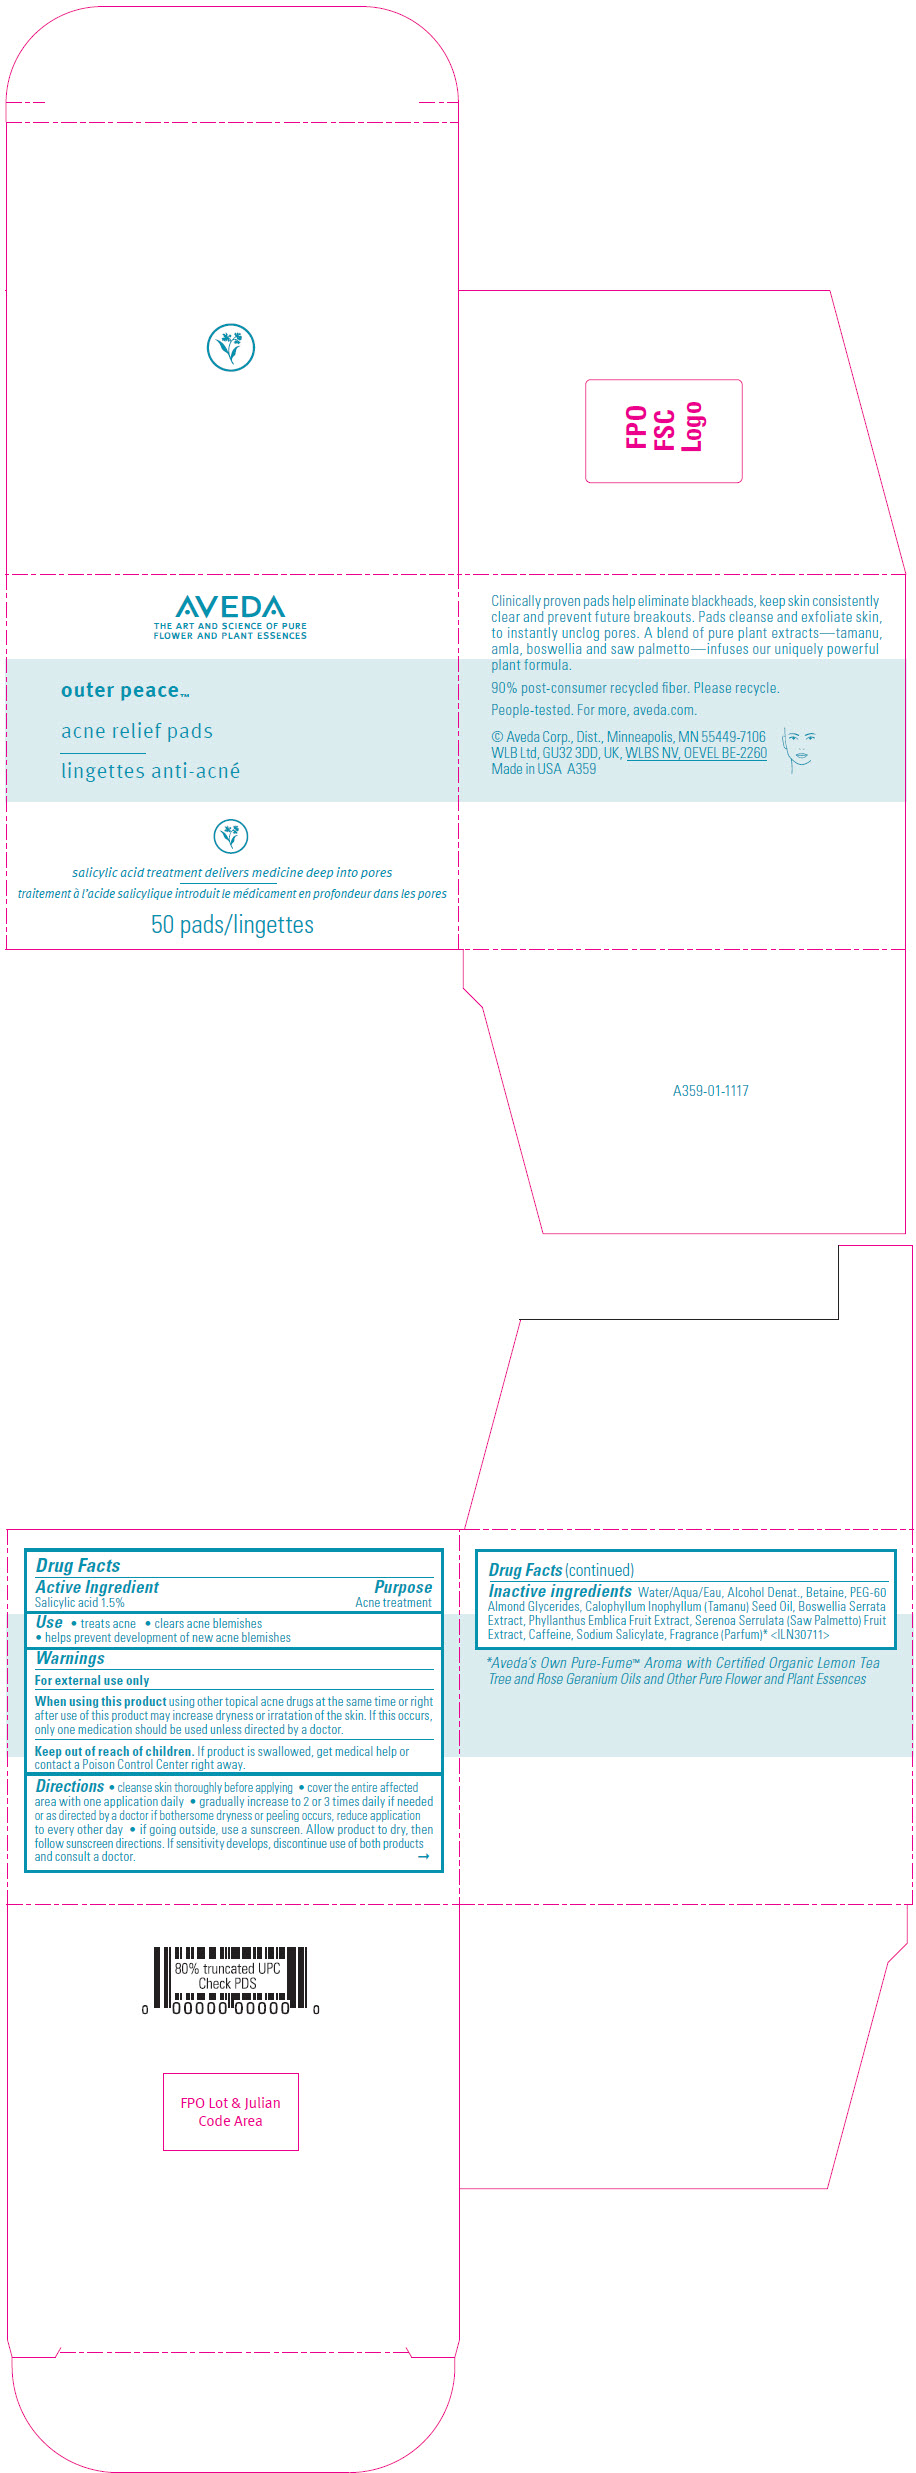 PRINCIPAL DISPLAY PANEL - 50 Pad Jar Carton